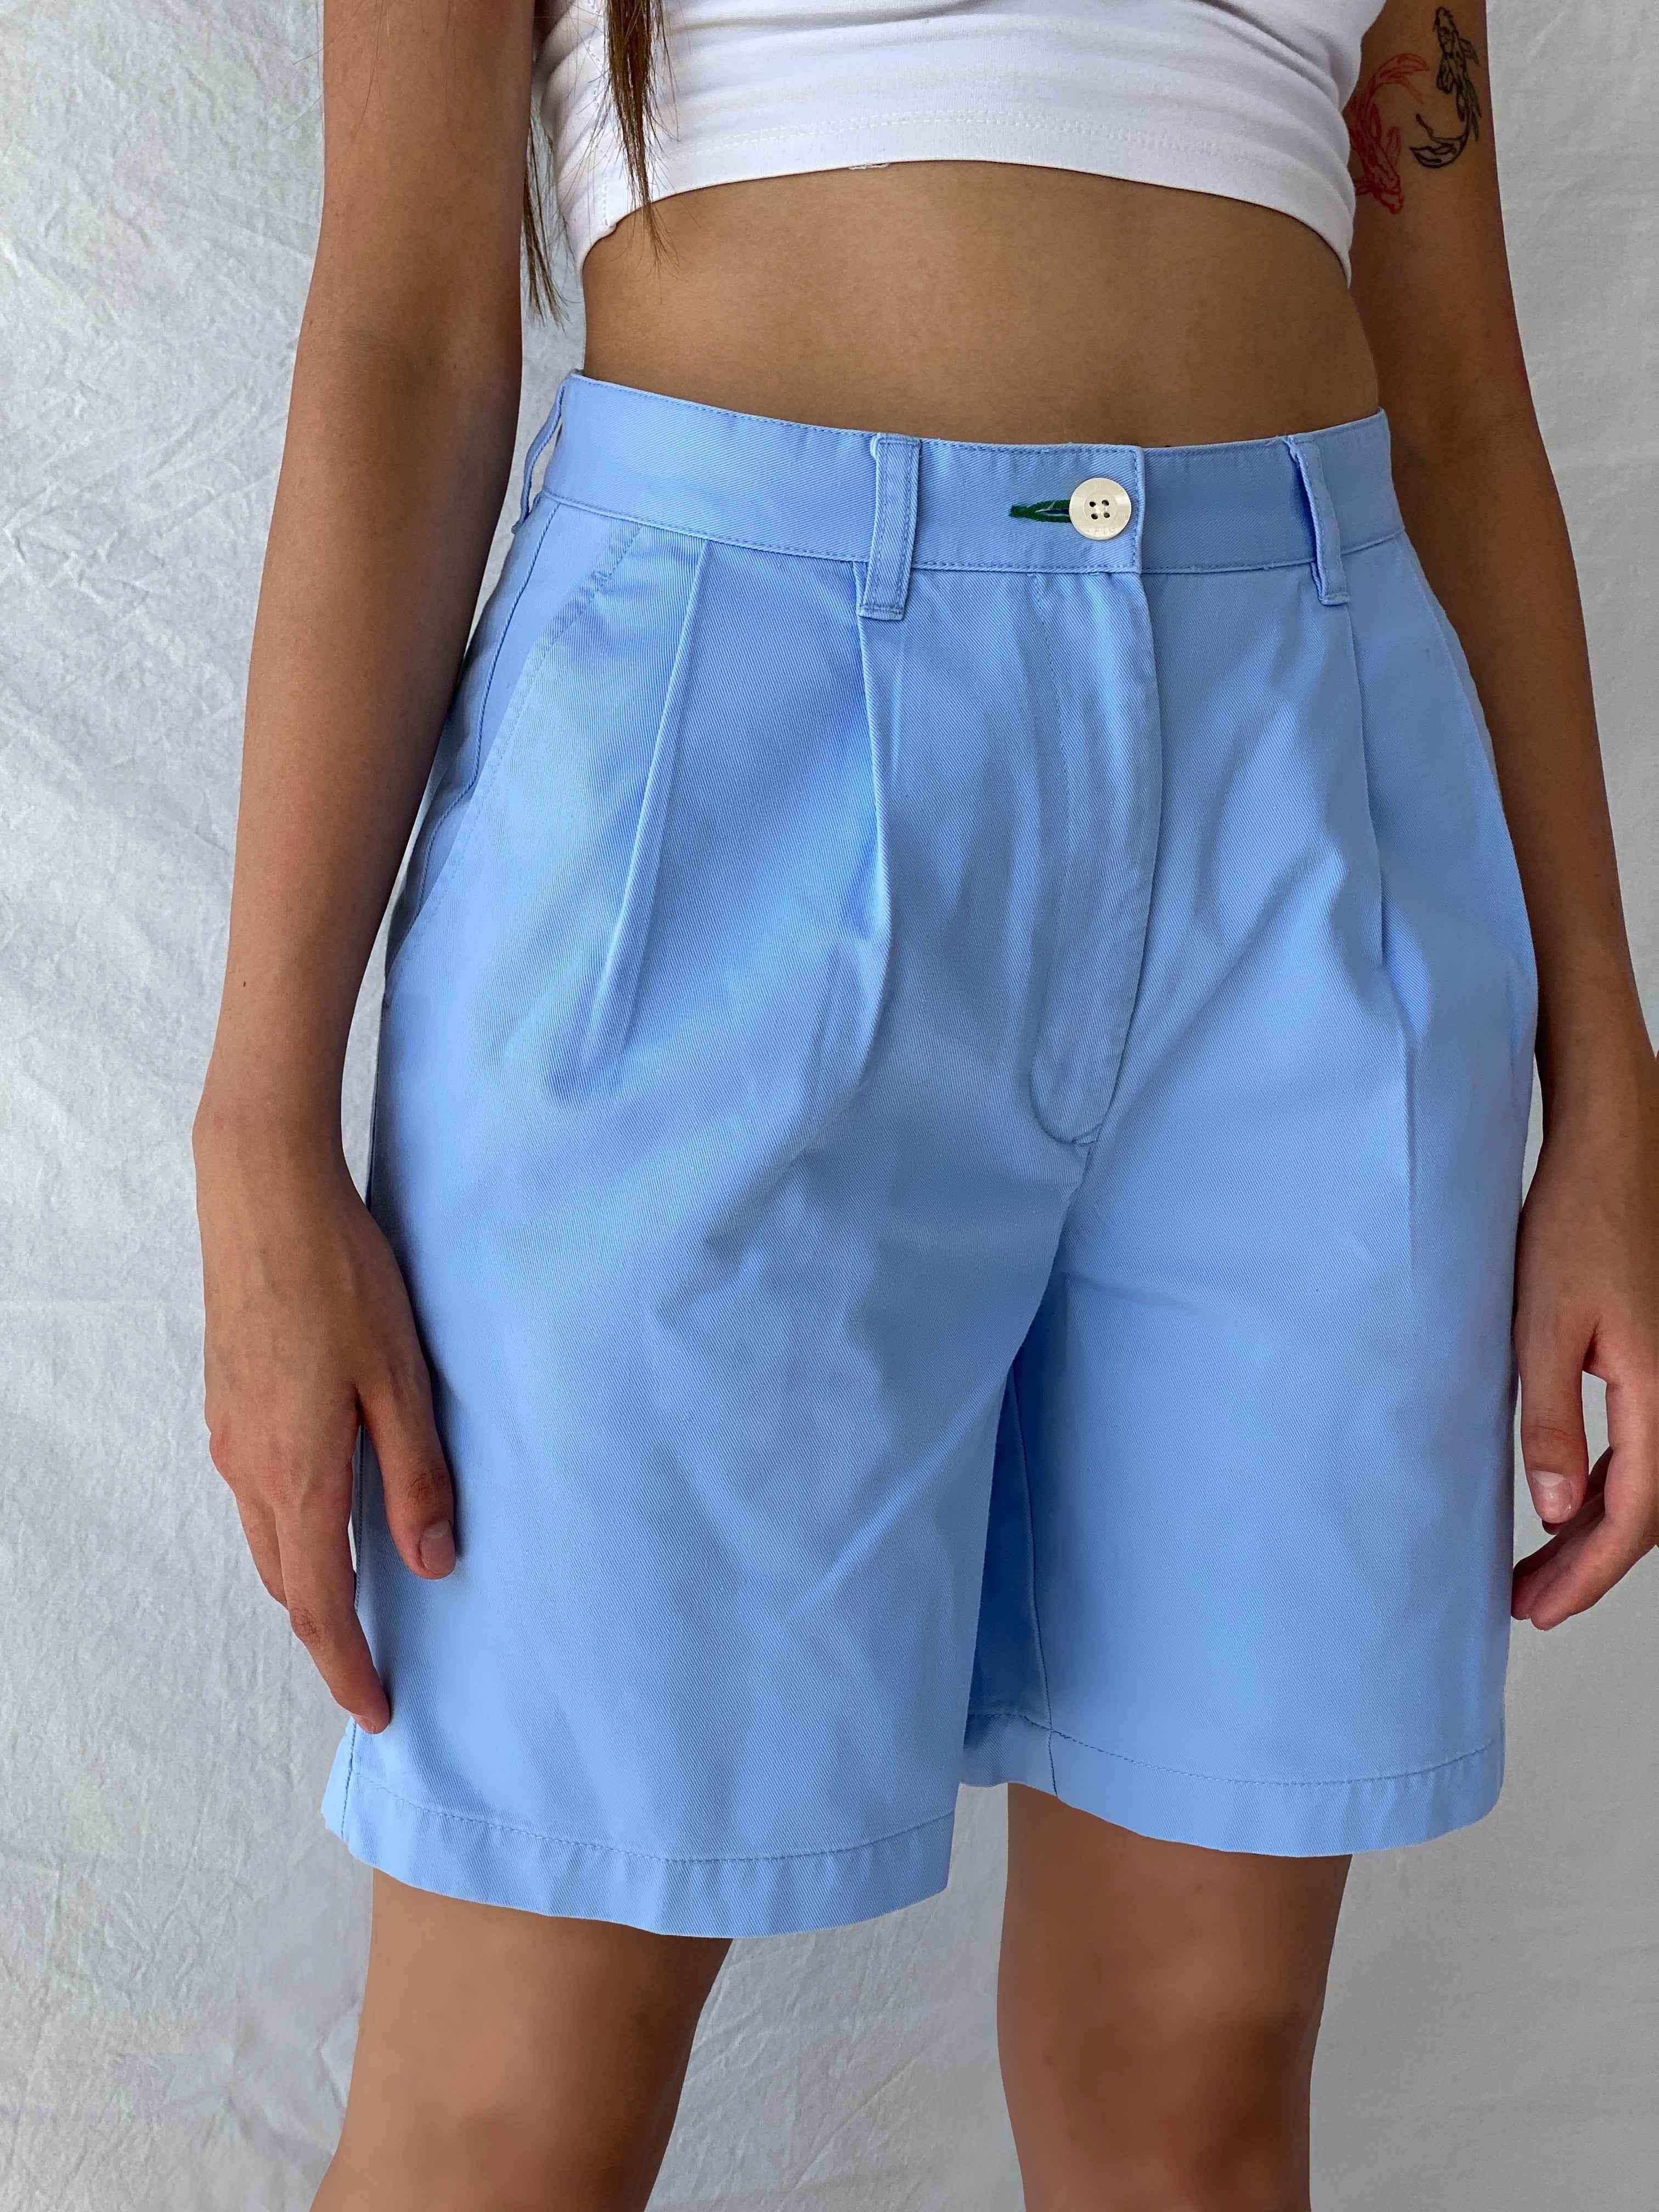 Tommy Hilfiger Shorts - Balagan Vintage Shorts 00s, 90s, Mira